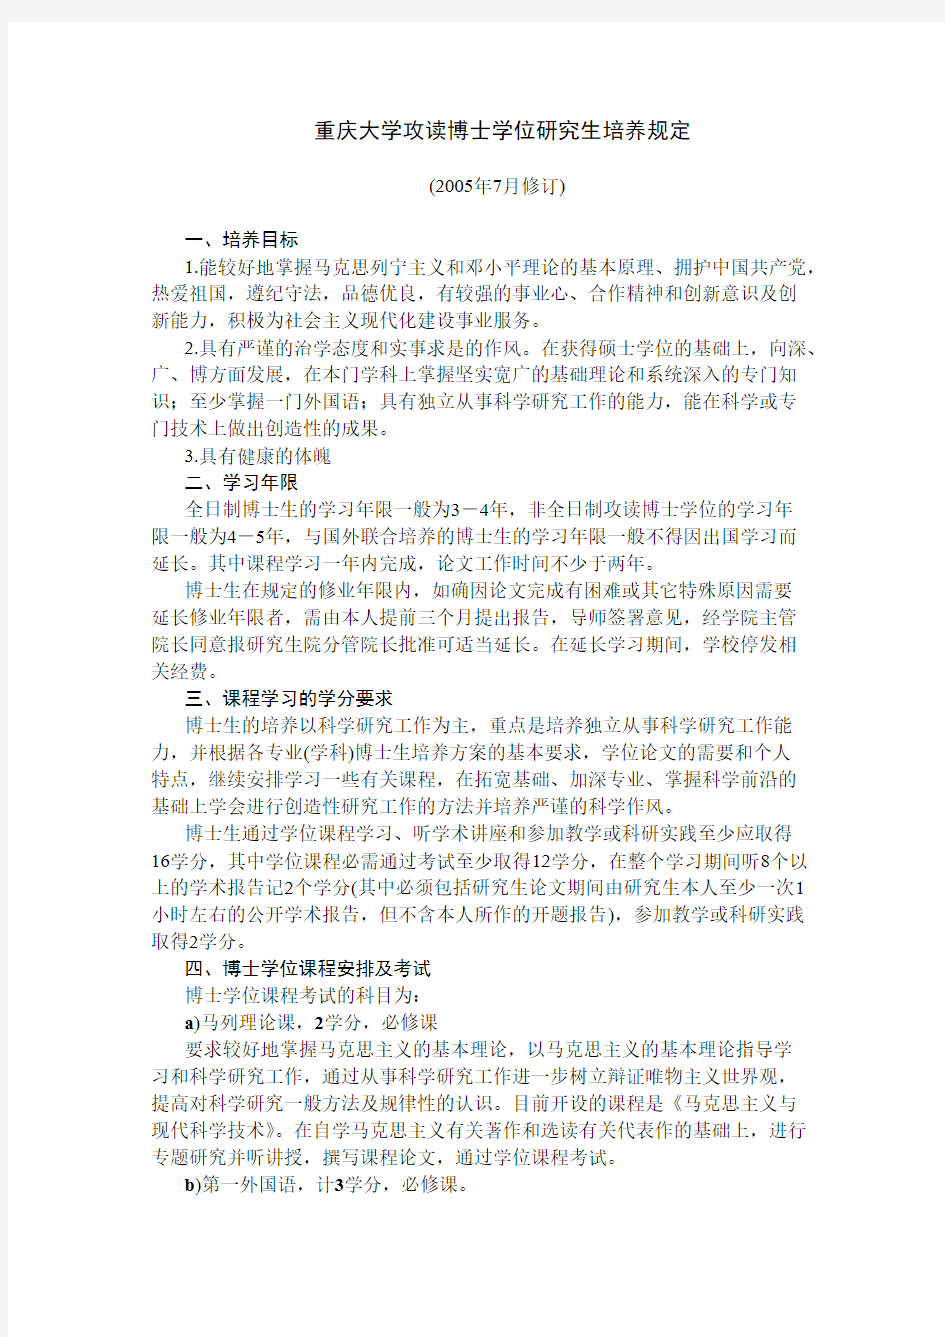 重庆大学攻读博士学位研究生培养规定